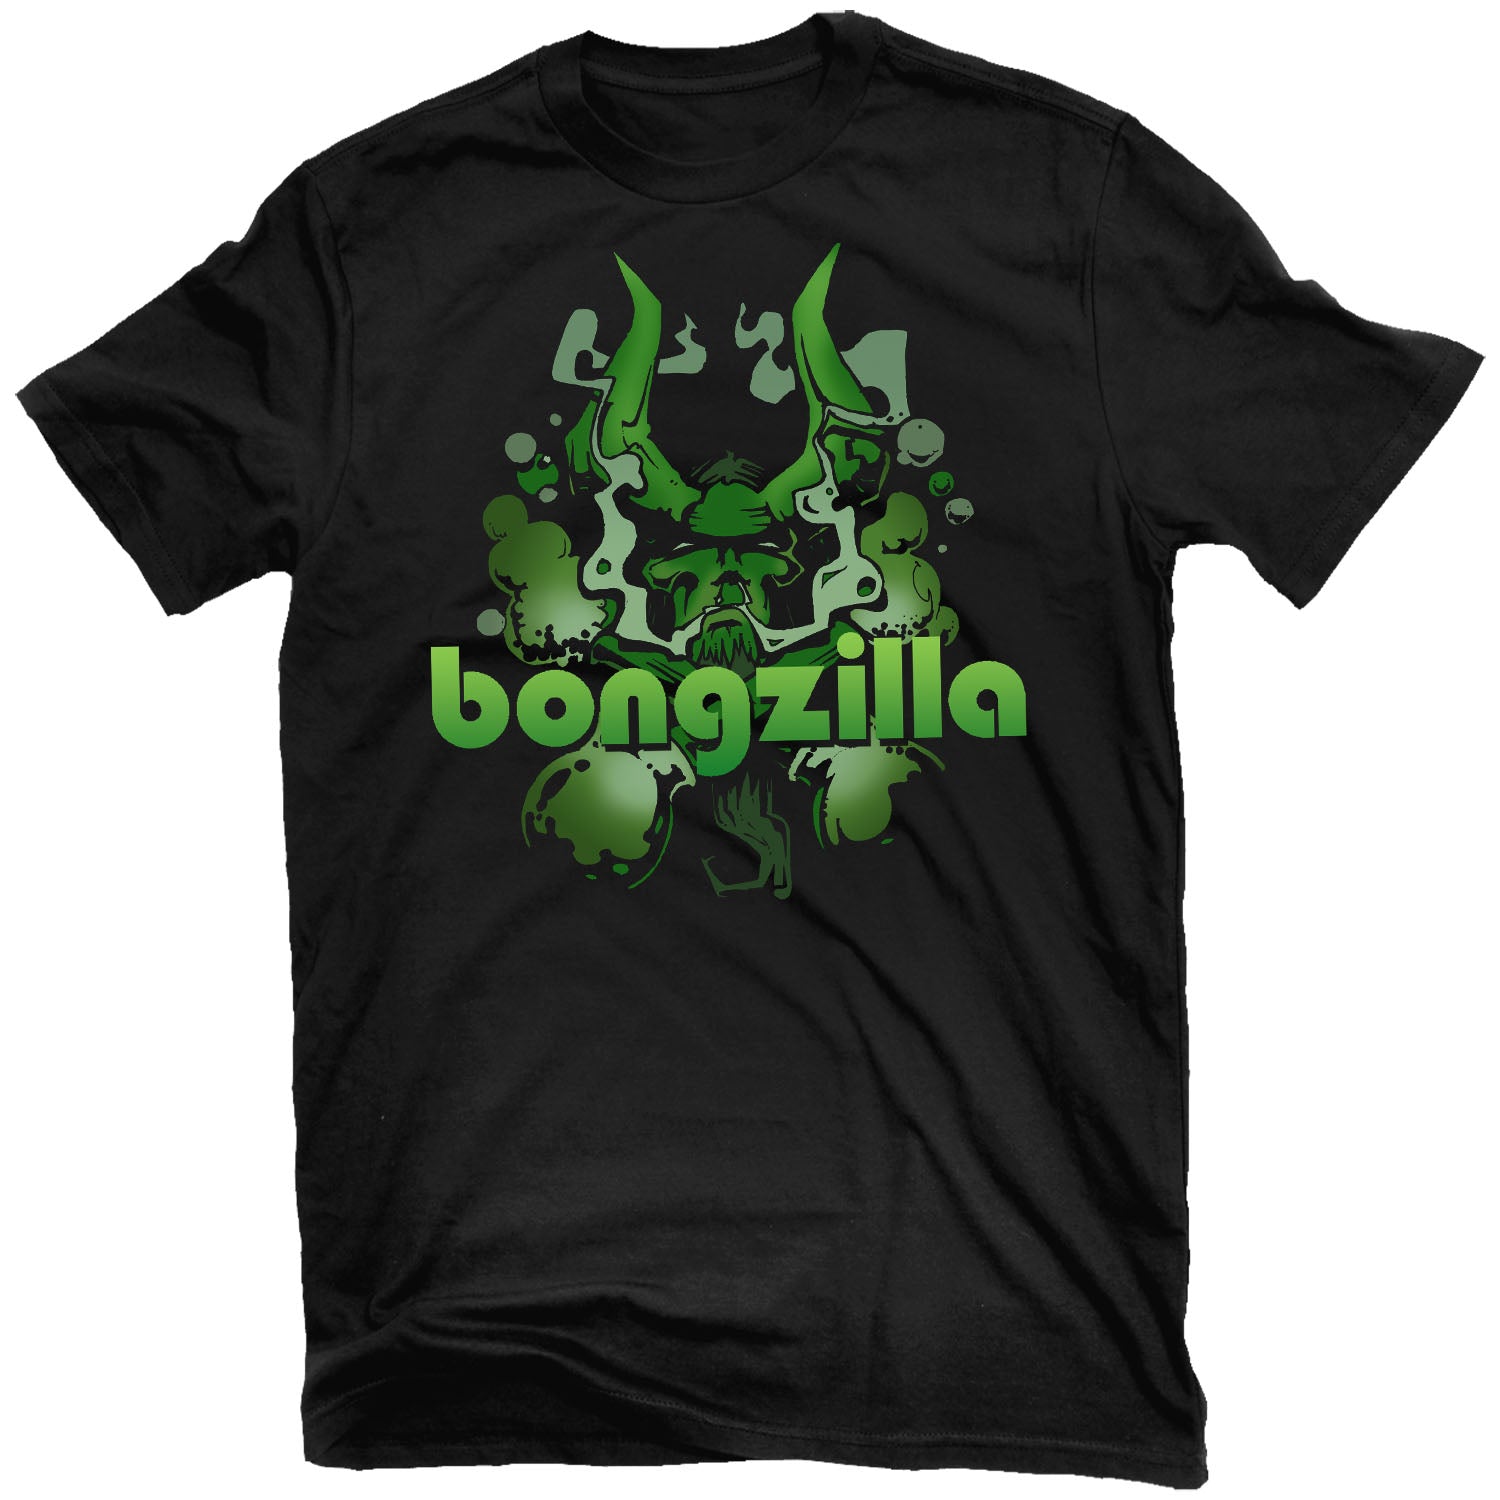 Bongzilla "Gateway" T-Shirt